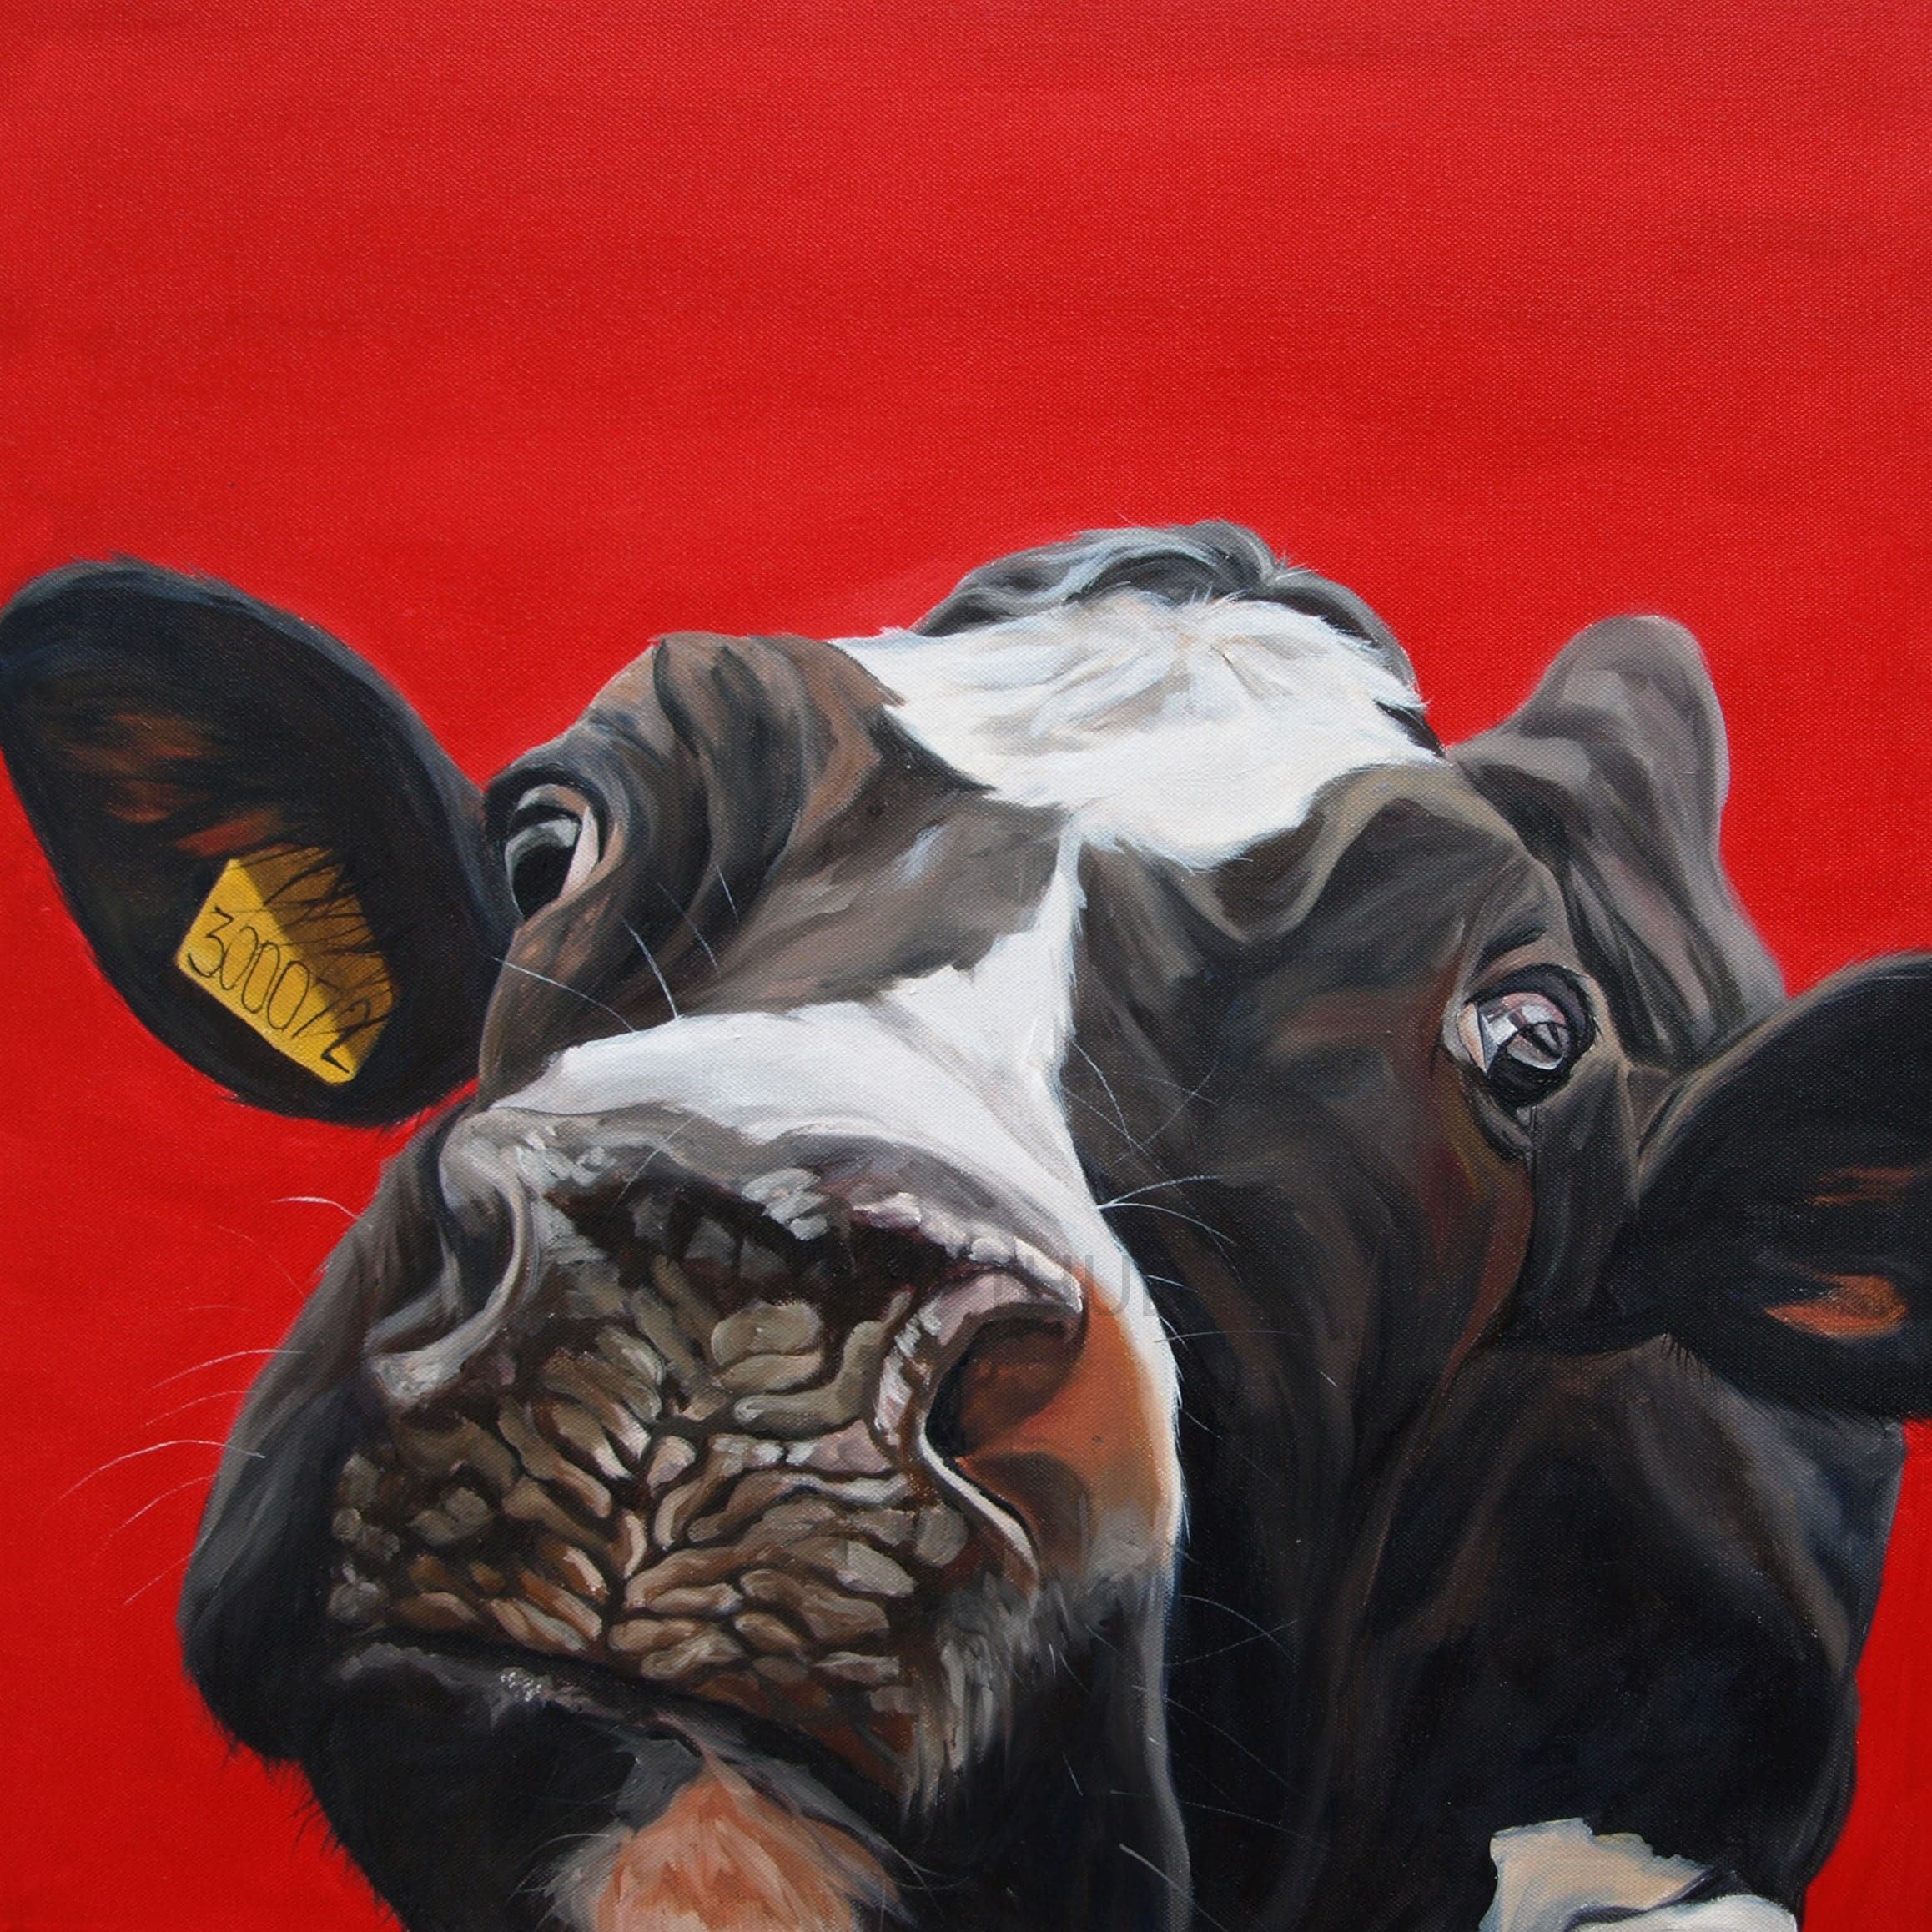 Framed 1 Panel - Cow Art